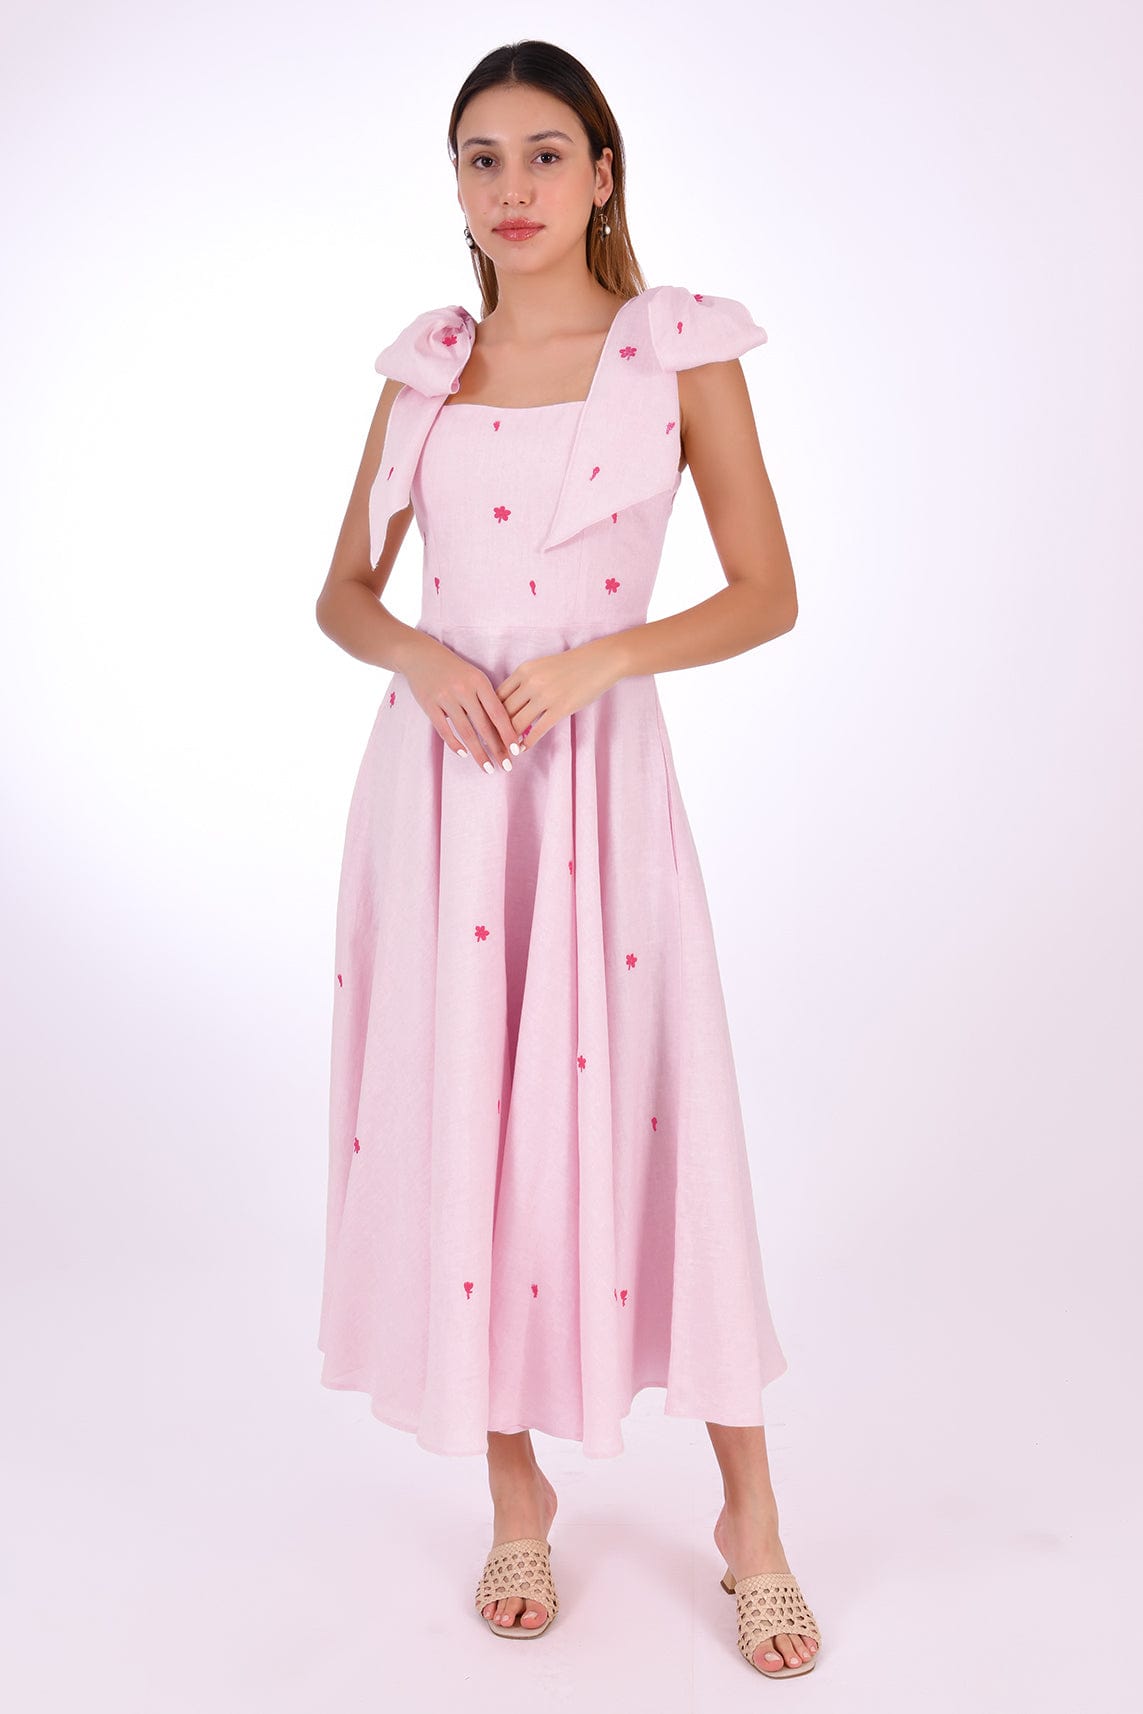 Fanm Mon Dress L / Light Pink Sara Midi Marassa